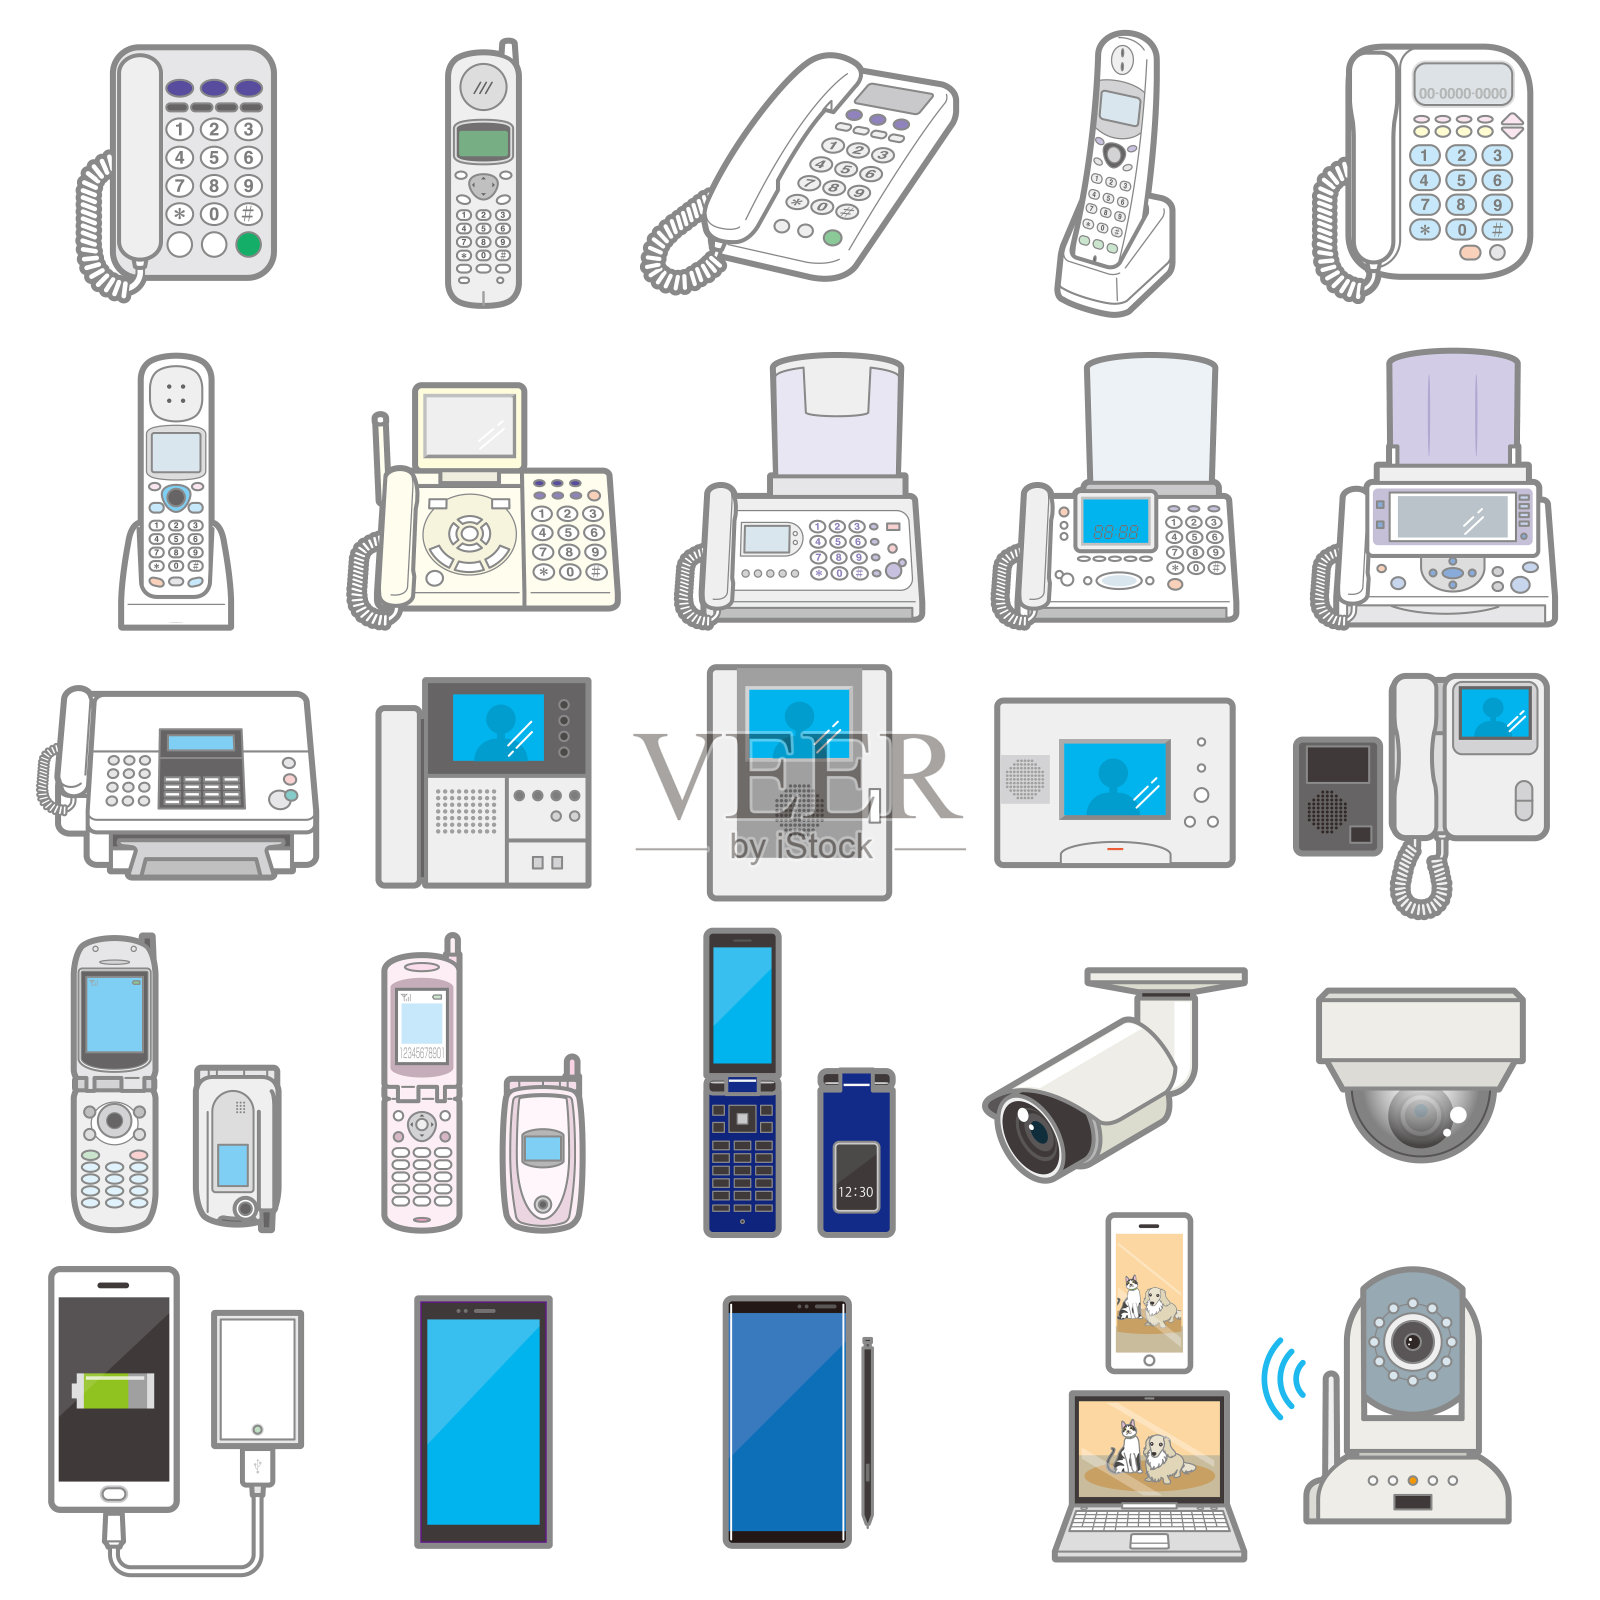 各种电器/通讯设备的说明插画图片素材